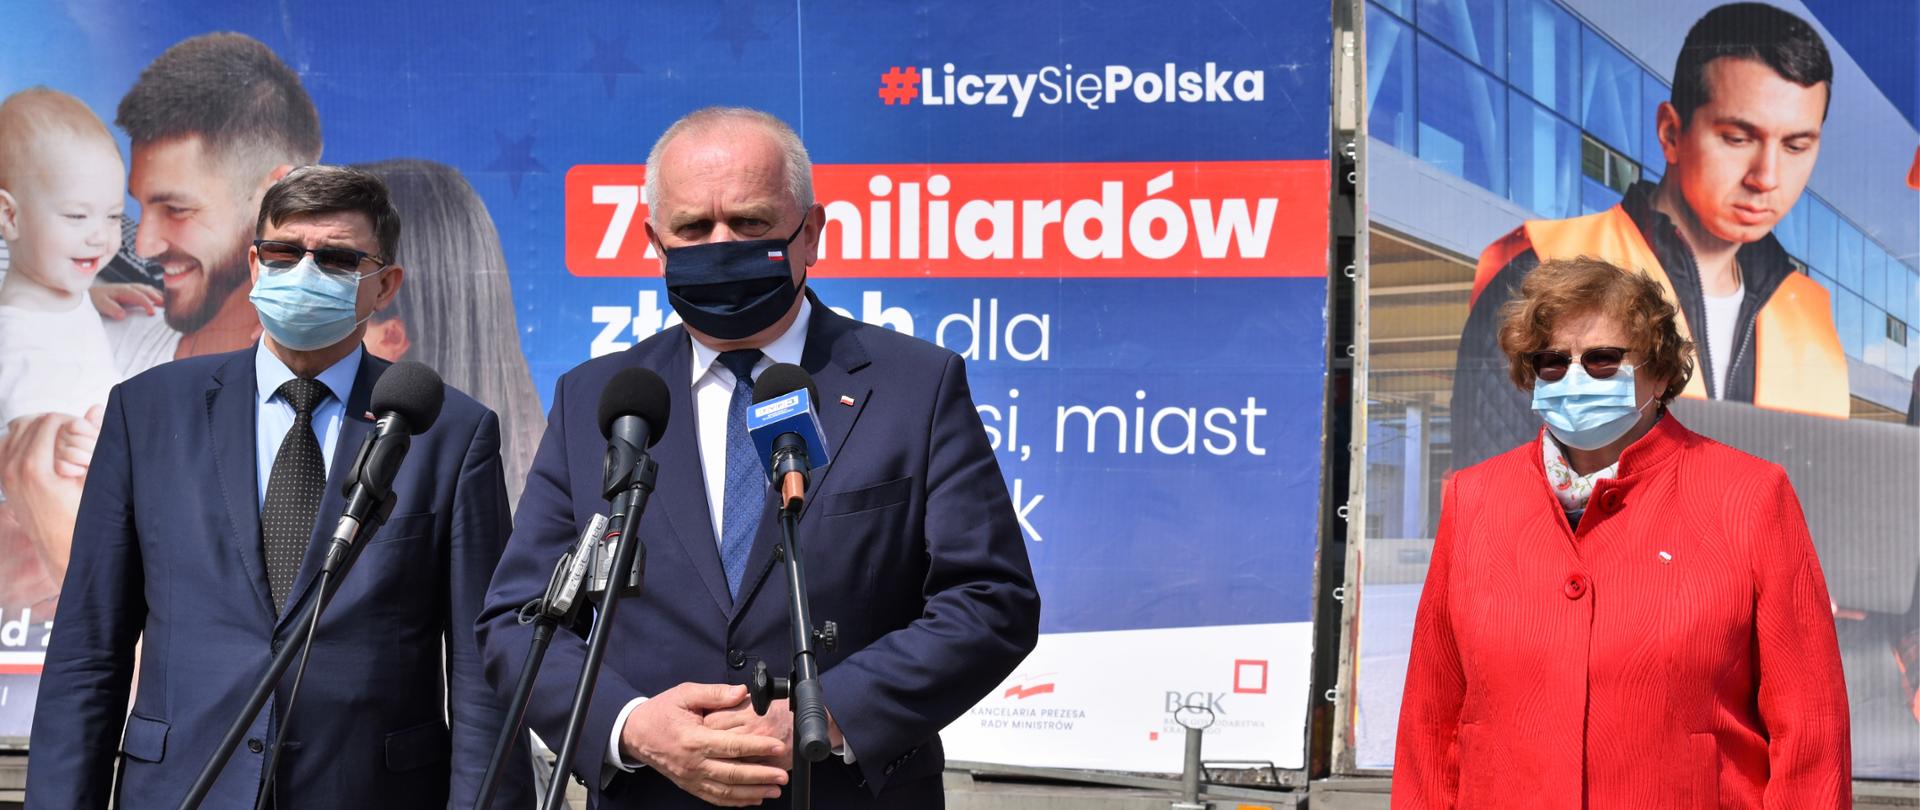 Wojewoda przemawia na tle plansz promocyjnych Liczy się Polska. Przed nim ustawione mikrofony. Za nim, po obu stronach stoją Poseł Elżbieta Płonka i Poseł Jerzy Materna 